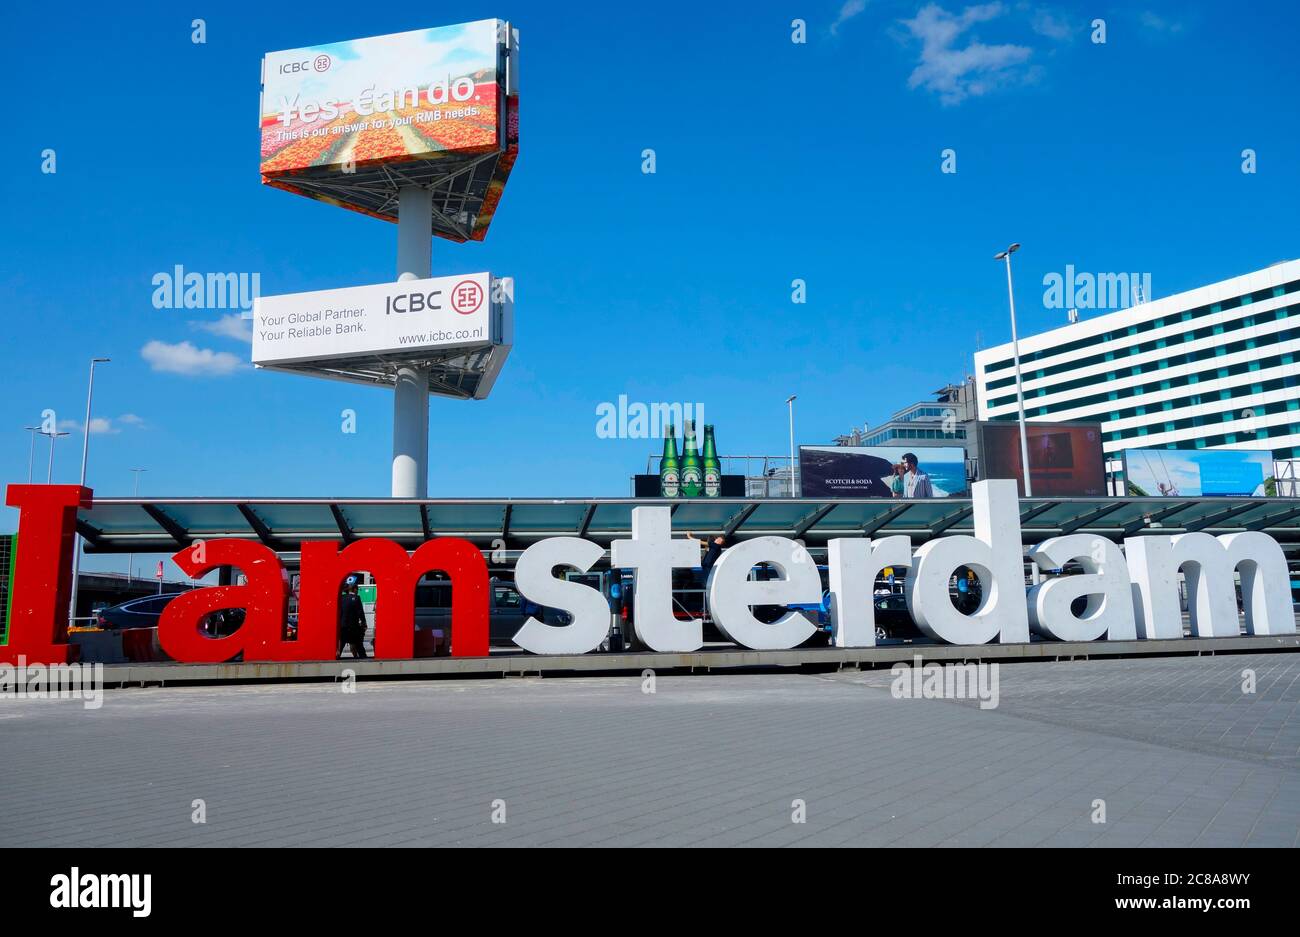 Panneau « I Am Amsterdam » devant l'aéroport de Schiphol. Amsterdam, pays-Bas. Banque D'Images